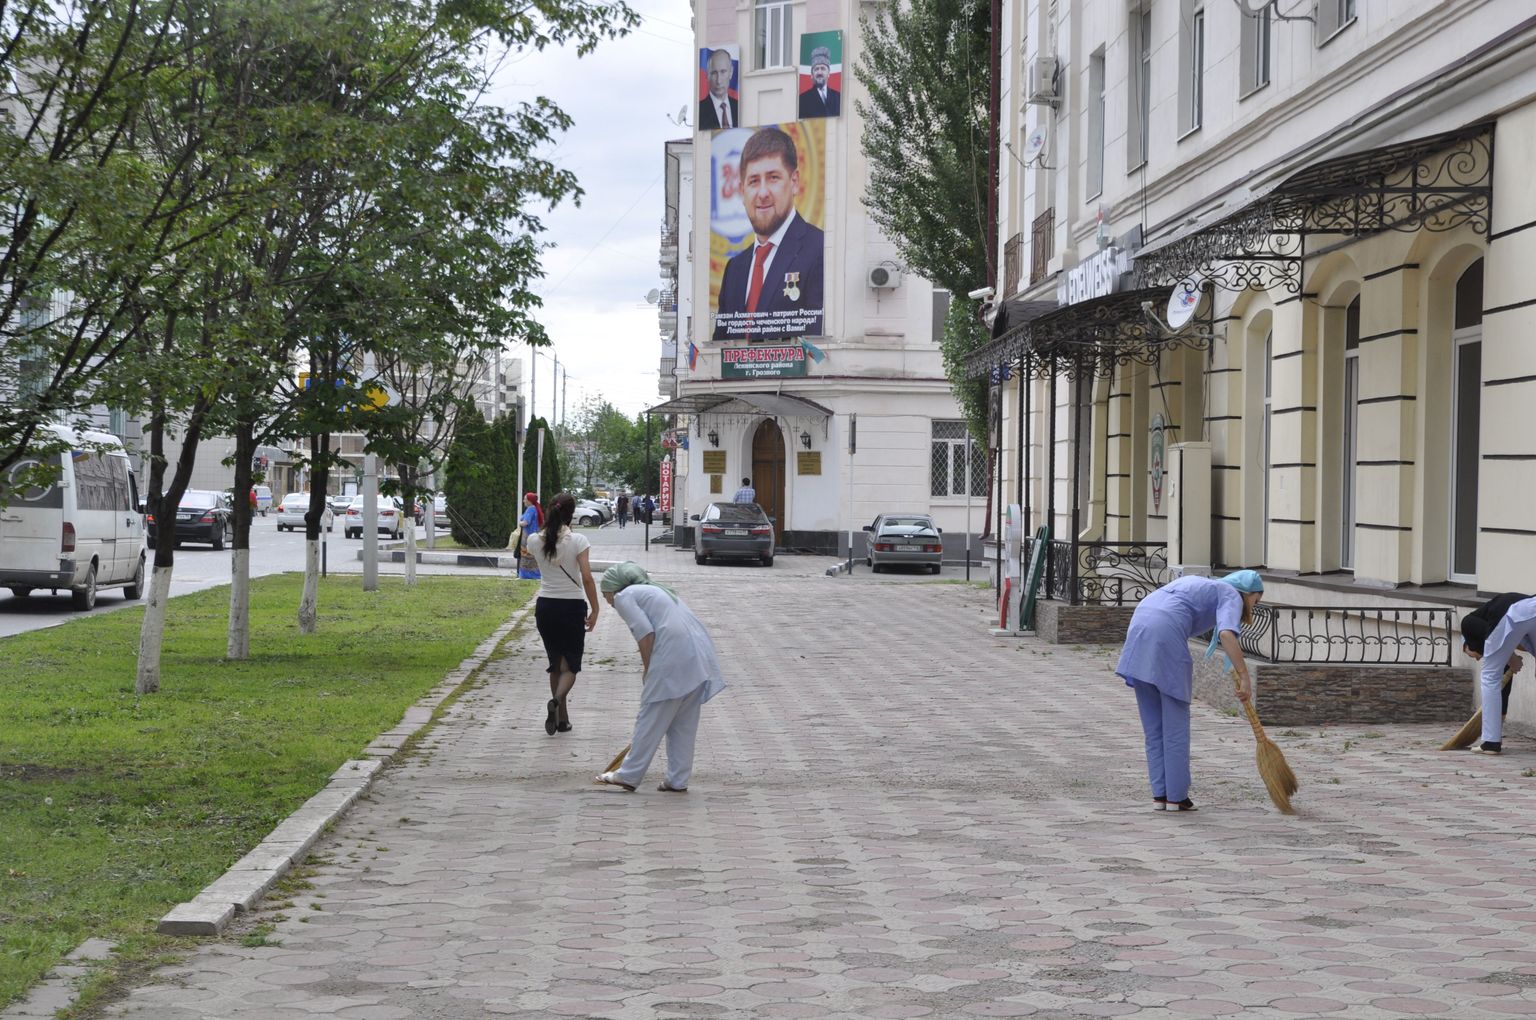 Kord on majas! Groznõi ühe linnaosa valitsuse seinal rippuva Ramzan Kadõrovi portree valve all pühivad polikliiniku töötajad tänavat.